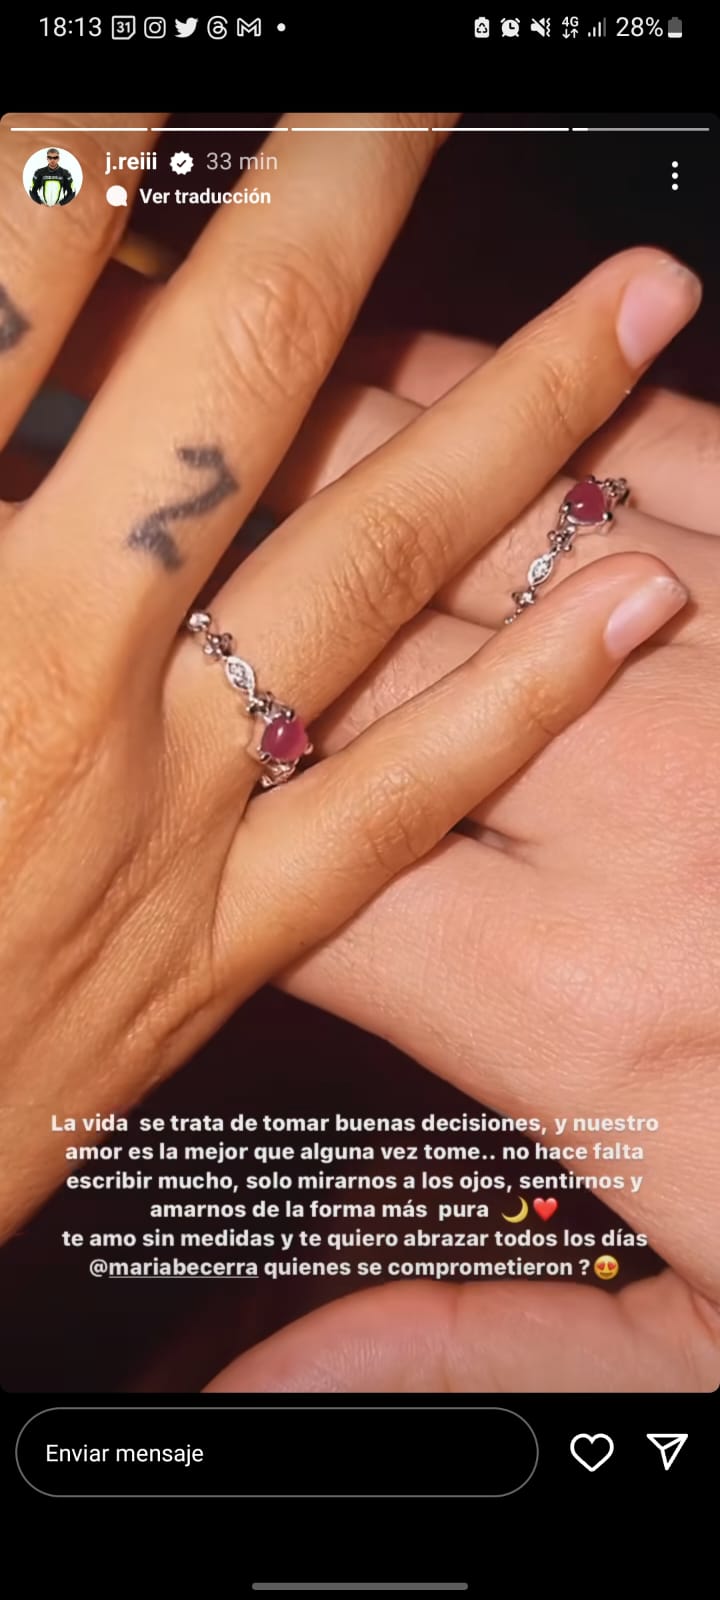 ¡Se casan! María Becerra y J Rei comprometidos • Canal C